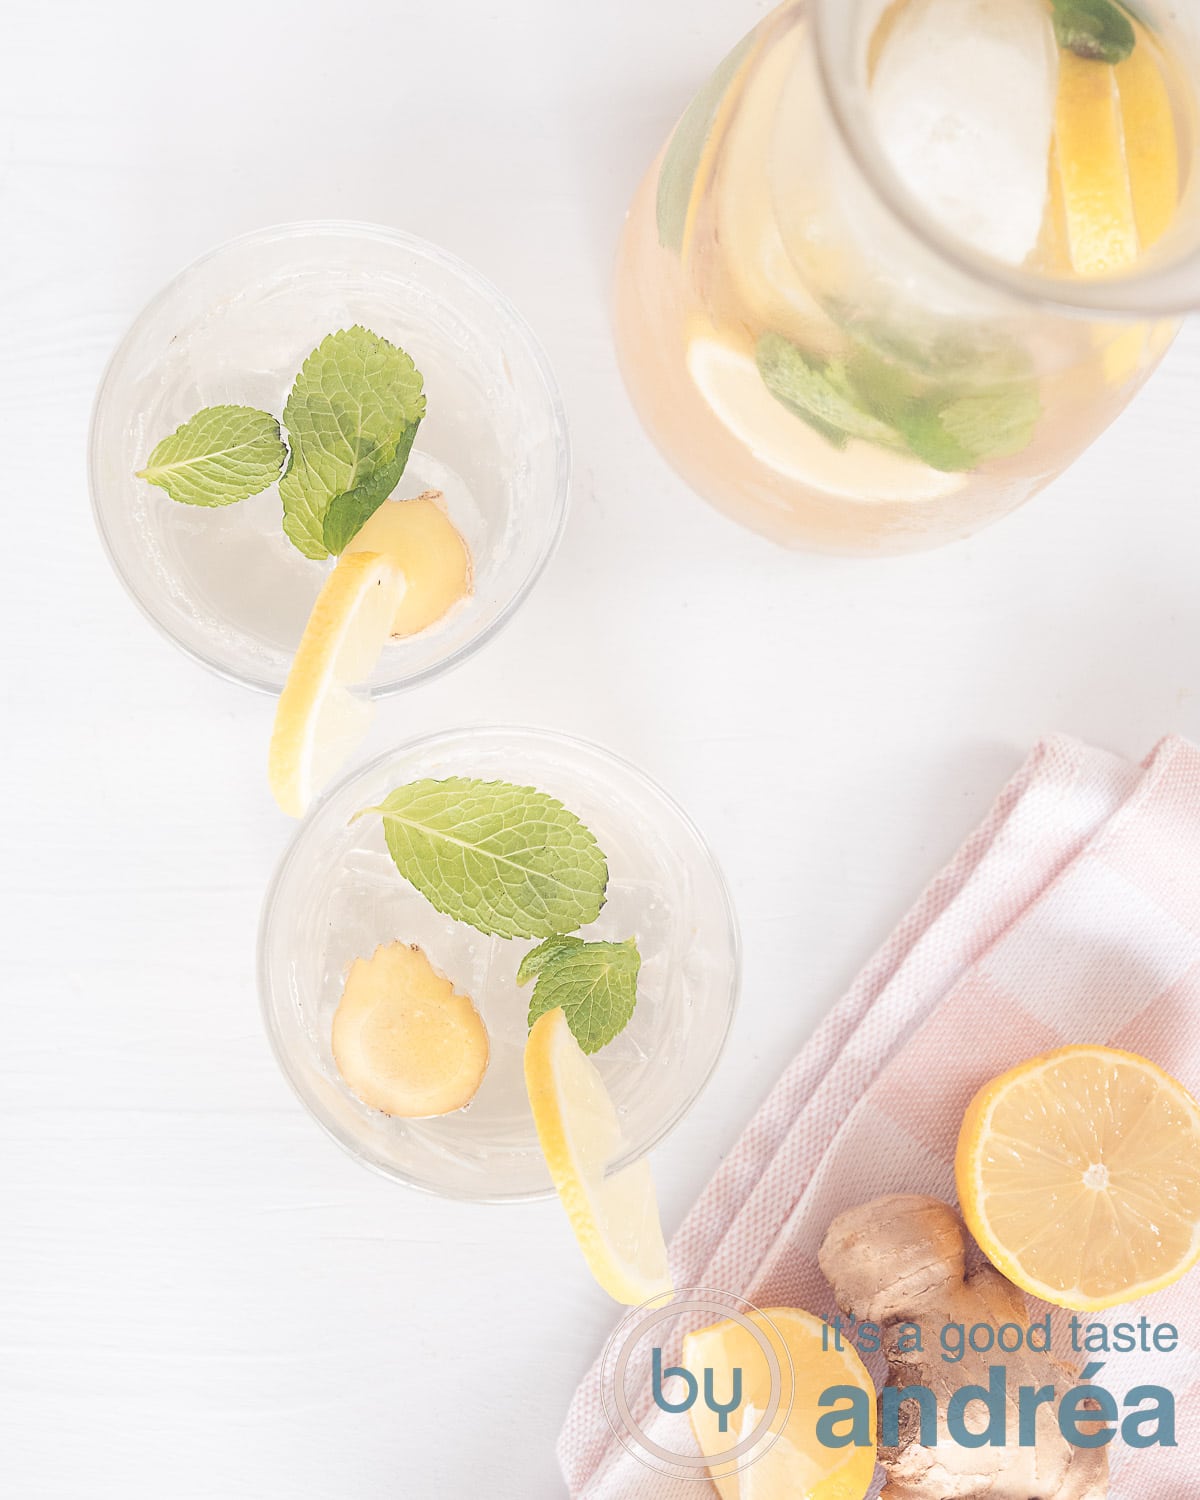 Een foto van bovenaf met twee glazen gevuld met citroen-gember limonade alsmede een karaf. Onderin een roze wite theedoek met citroen en een pers